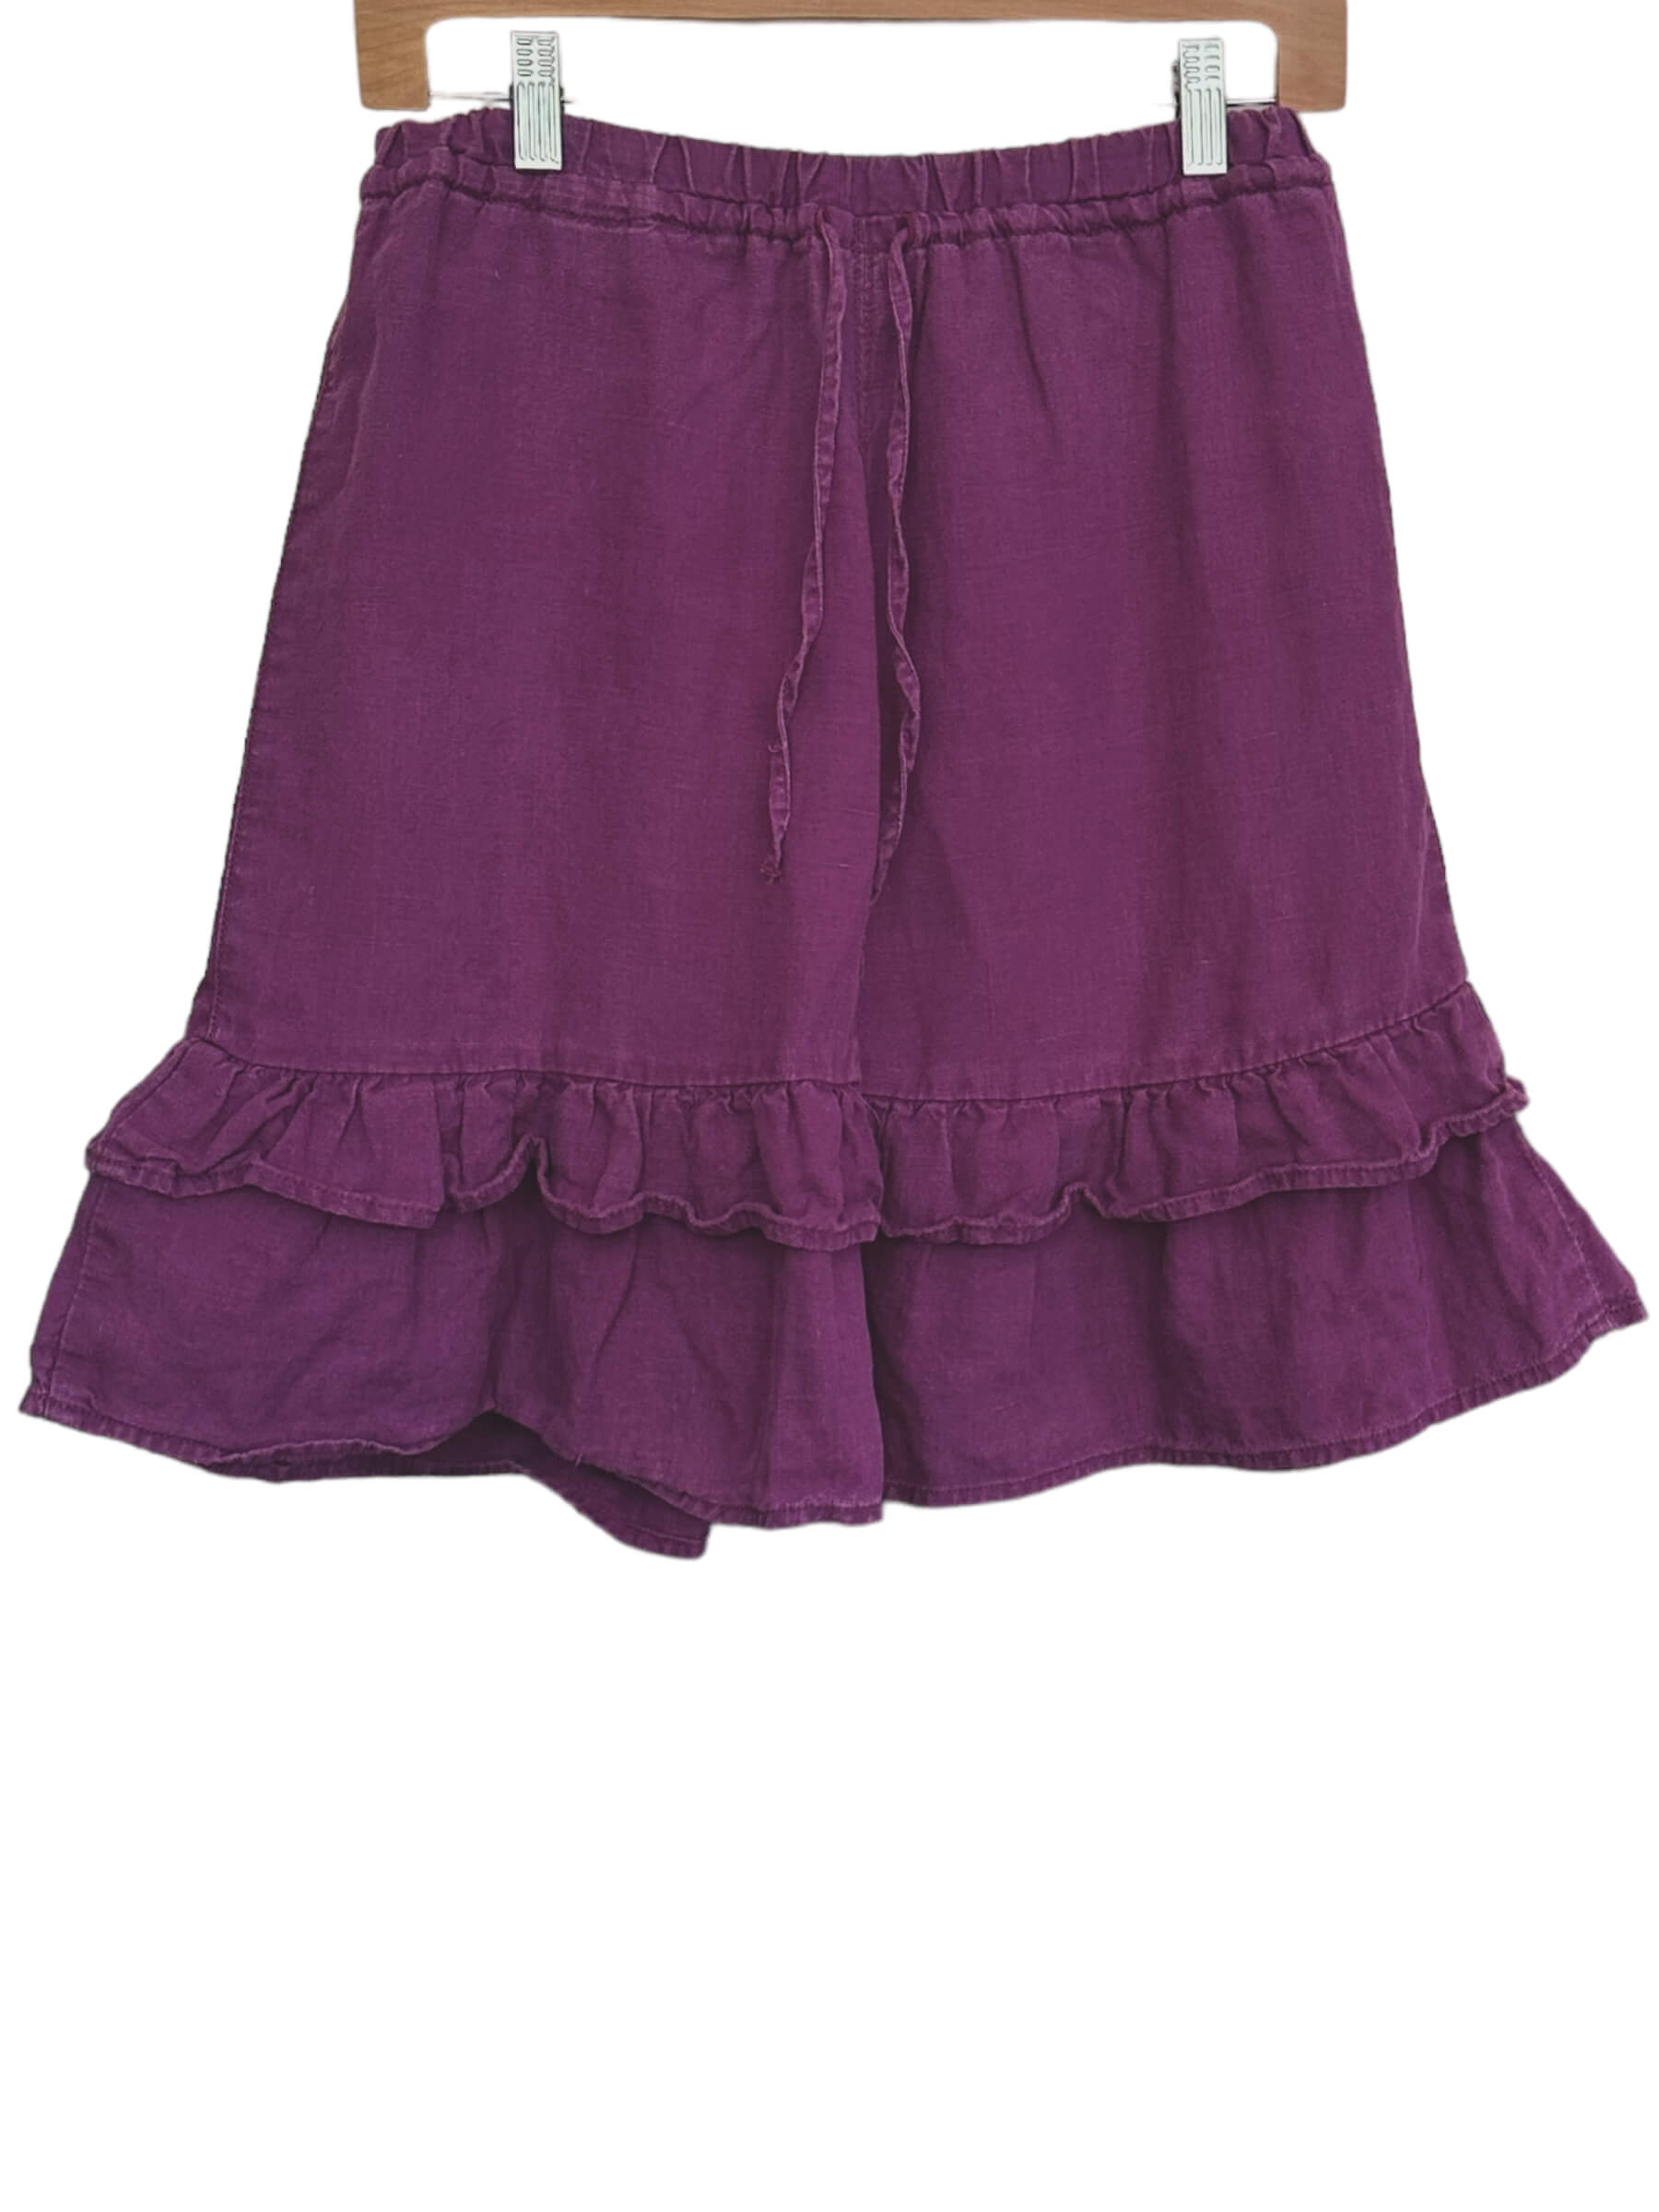 Warm Autumn ATHLETA plum purple ruffle hem linen mini skirt